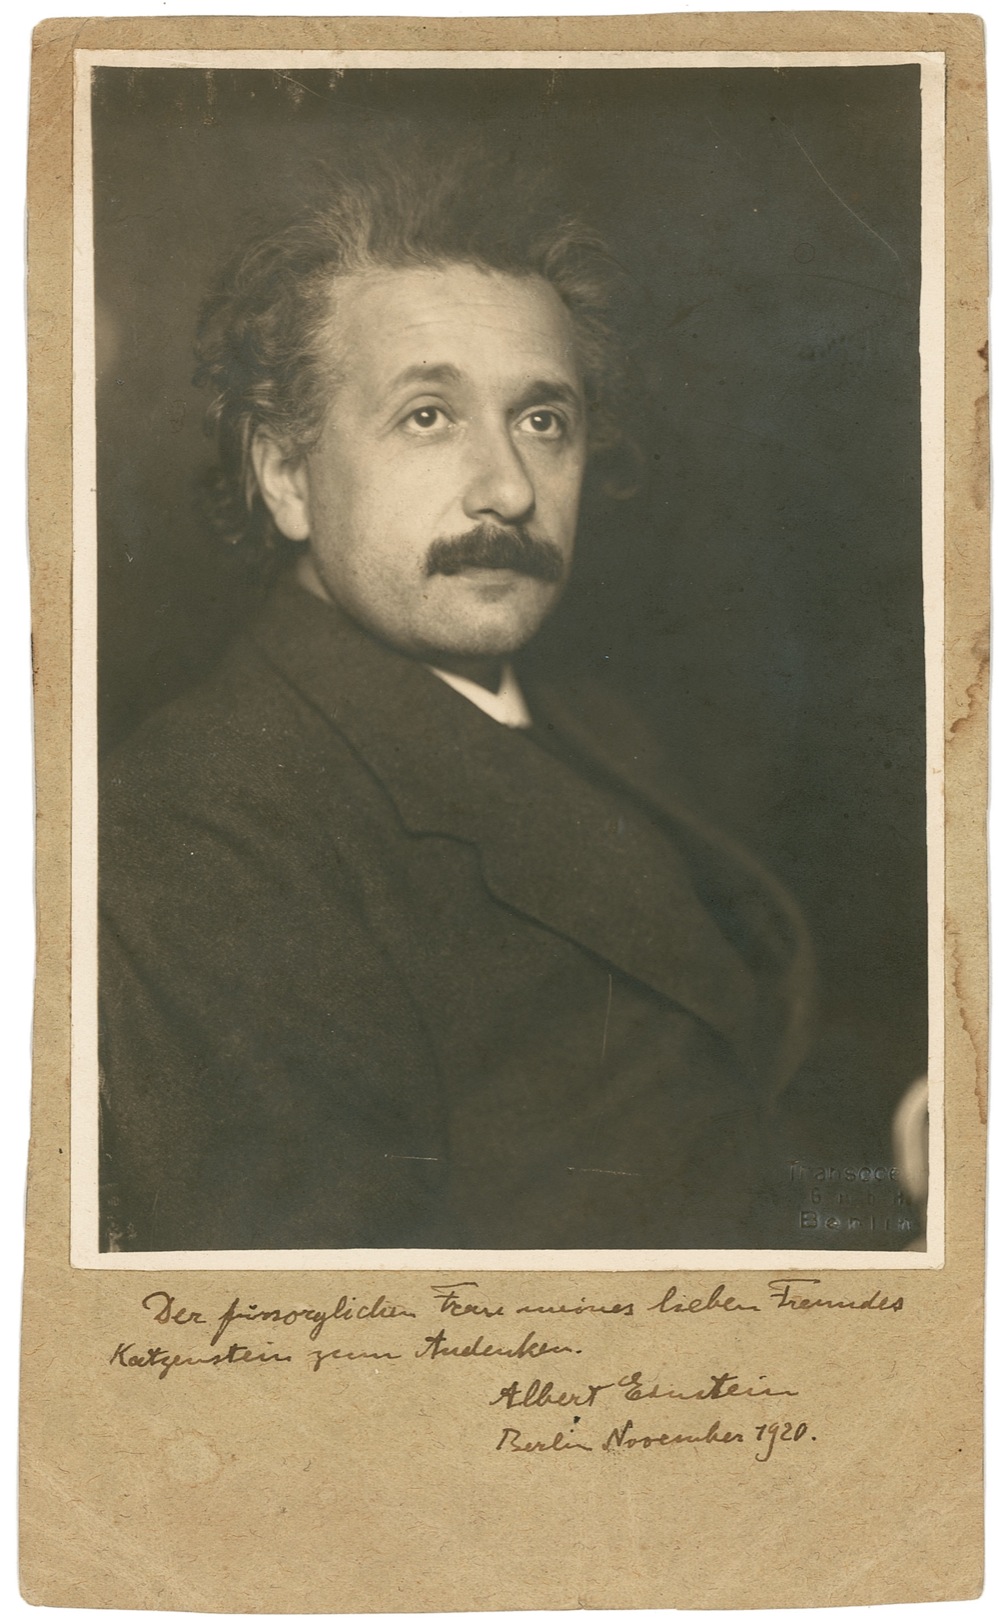 Lot #247 Albert Einstein